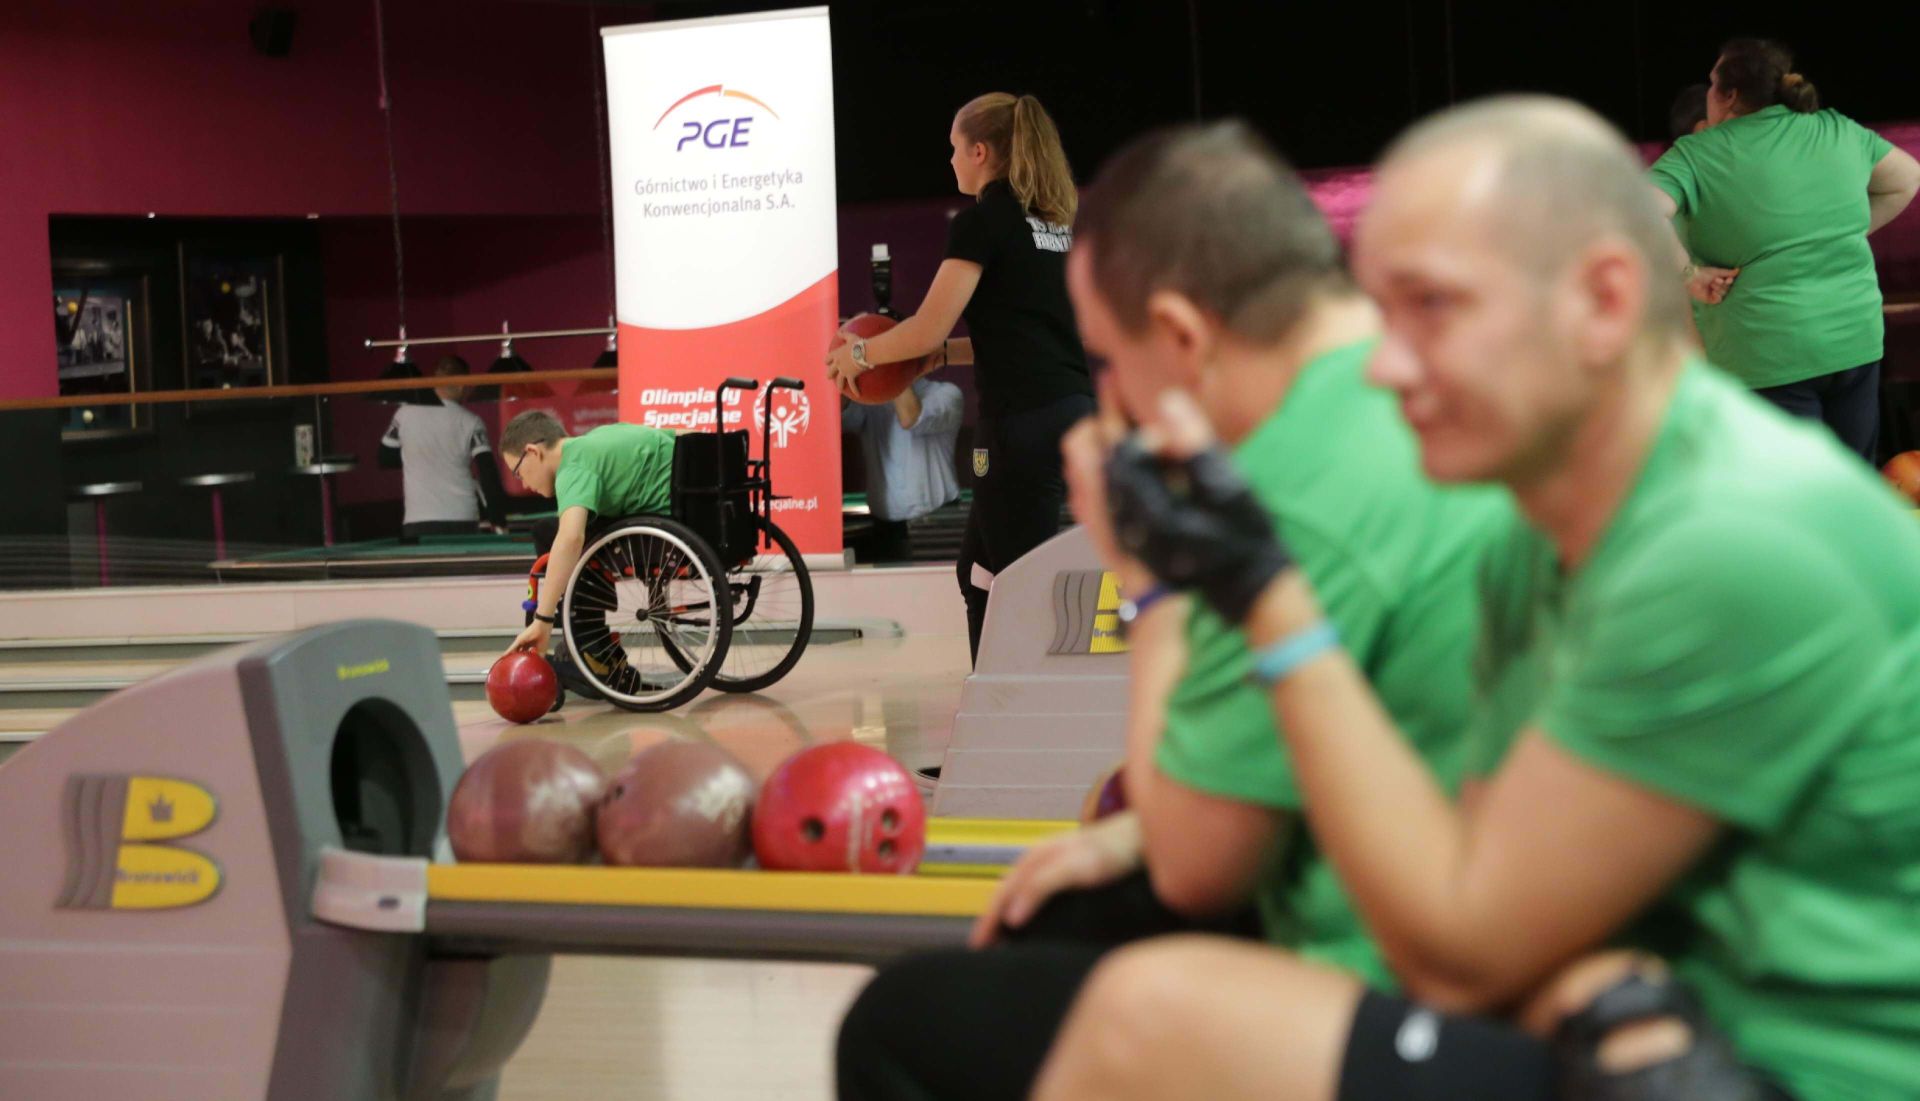 W integracyjnym turnieju bowlingowym wzięli udział sportowcy Promyka o róznym stopniu niepełnosprawności. Zdj. Wacław Troszka